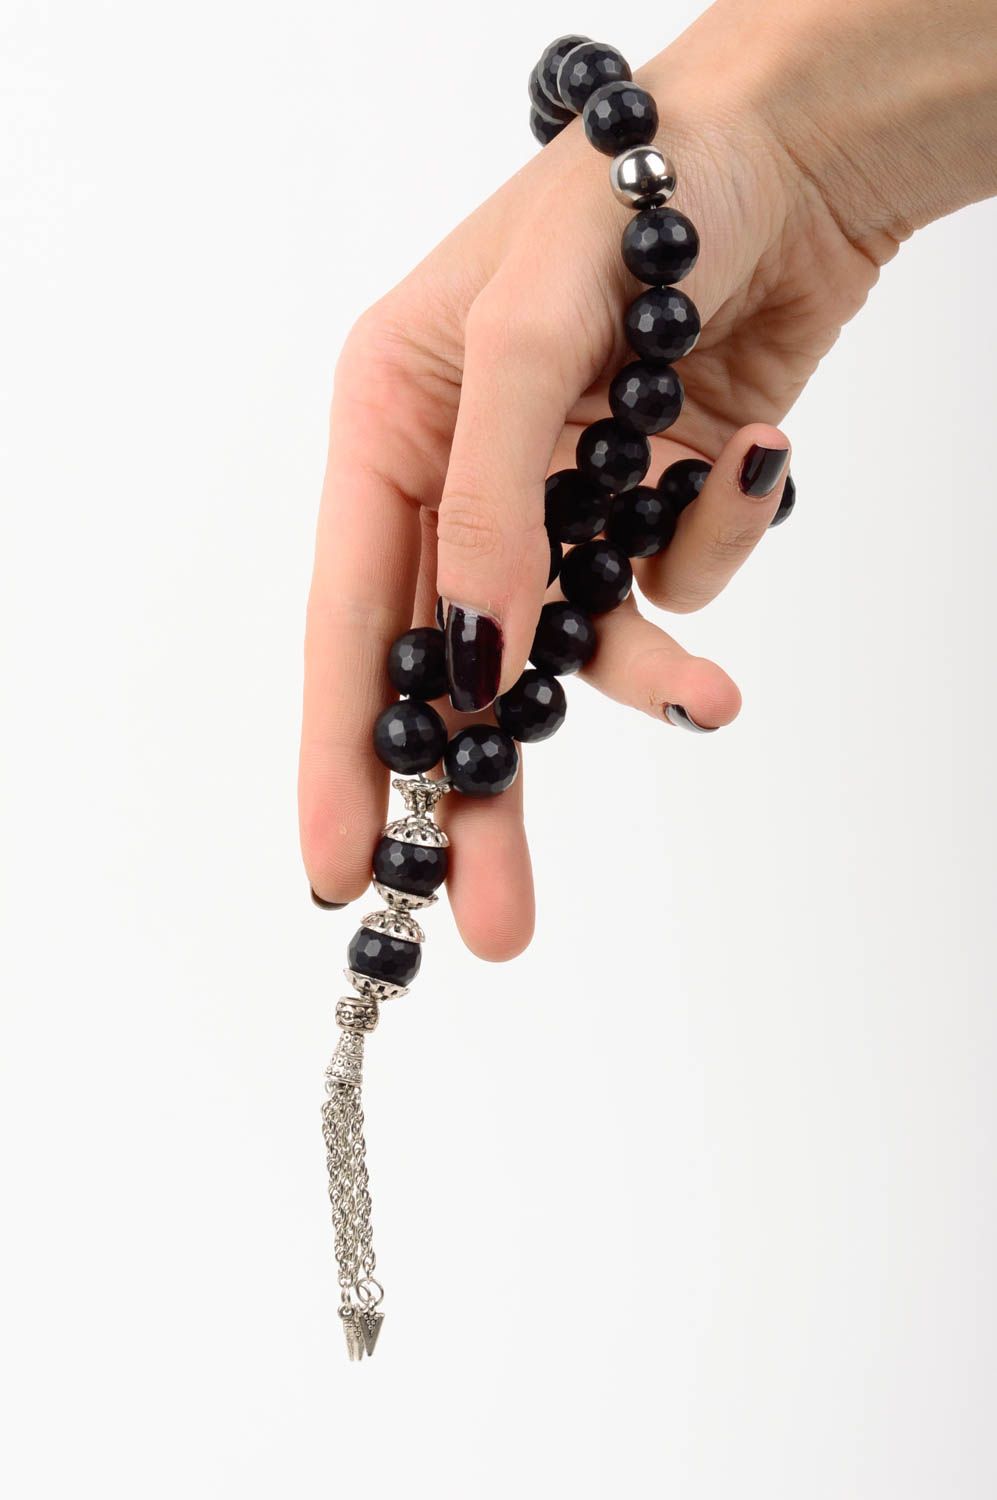 Rosary beads handmade prayer rope church accessories spiritual gifts worry beads photo 2